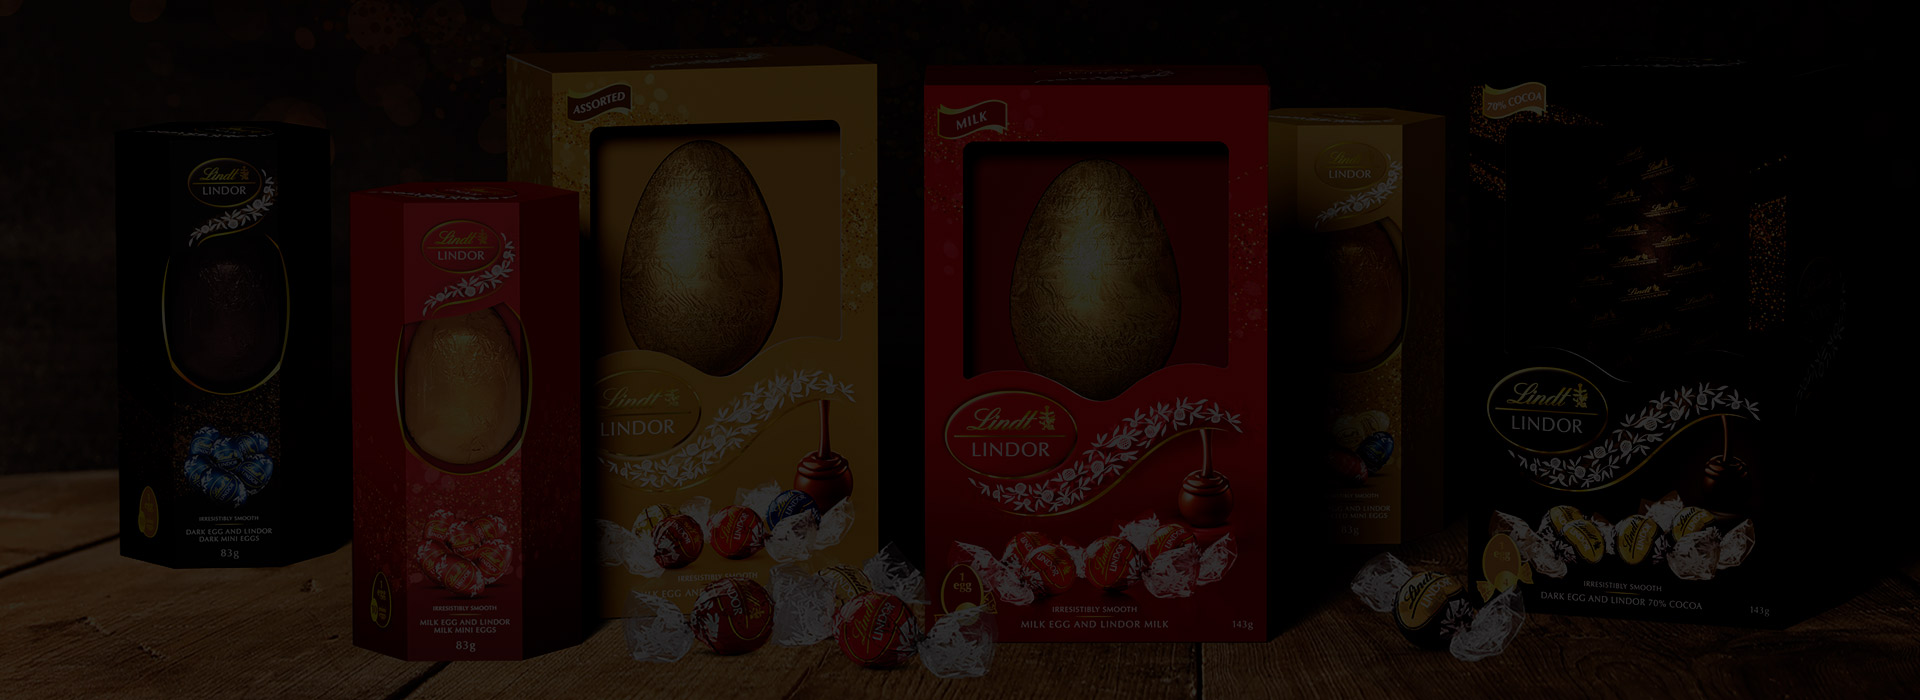 Lindt Easter packaging artwork